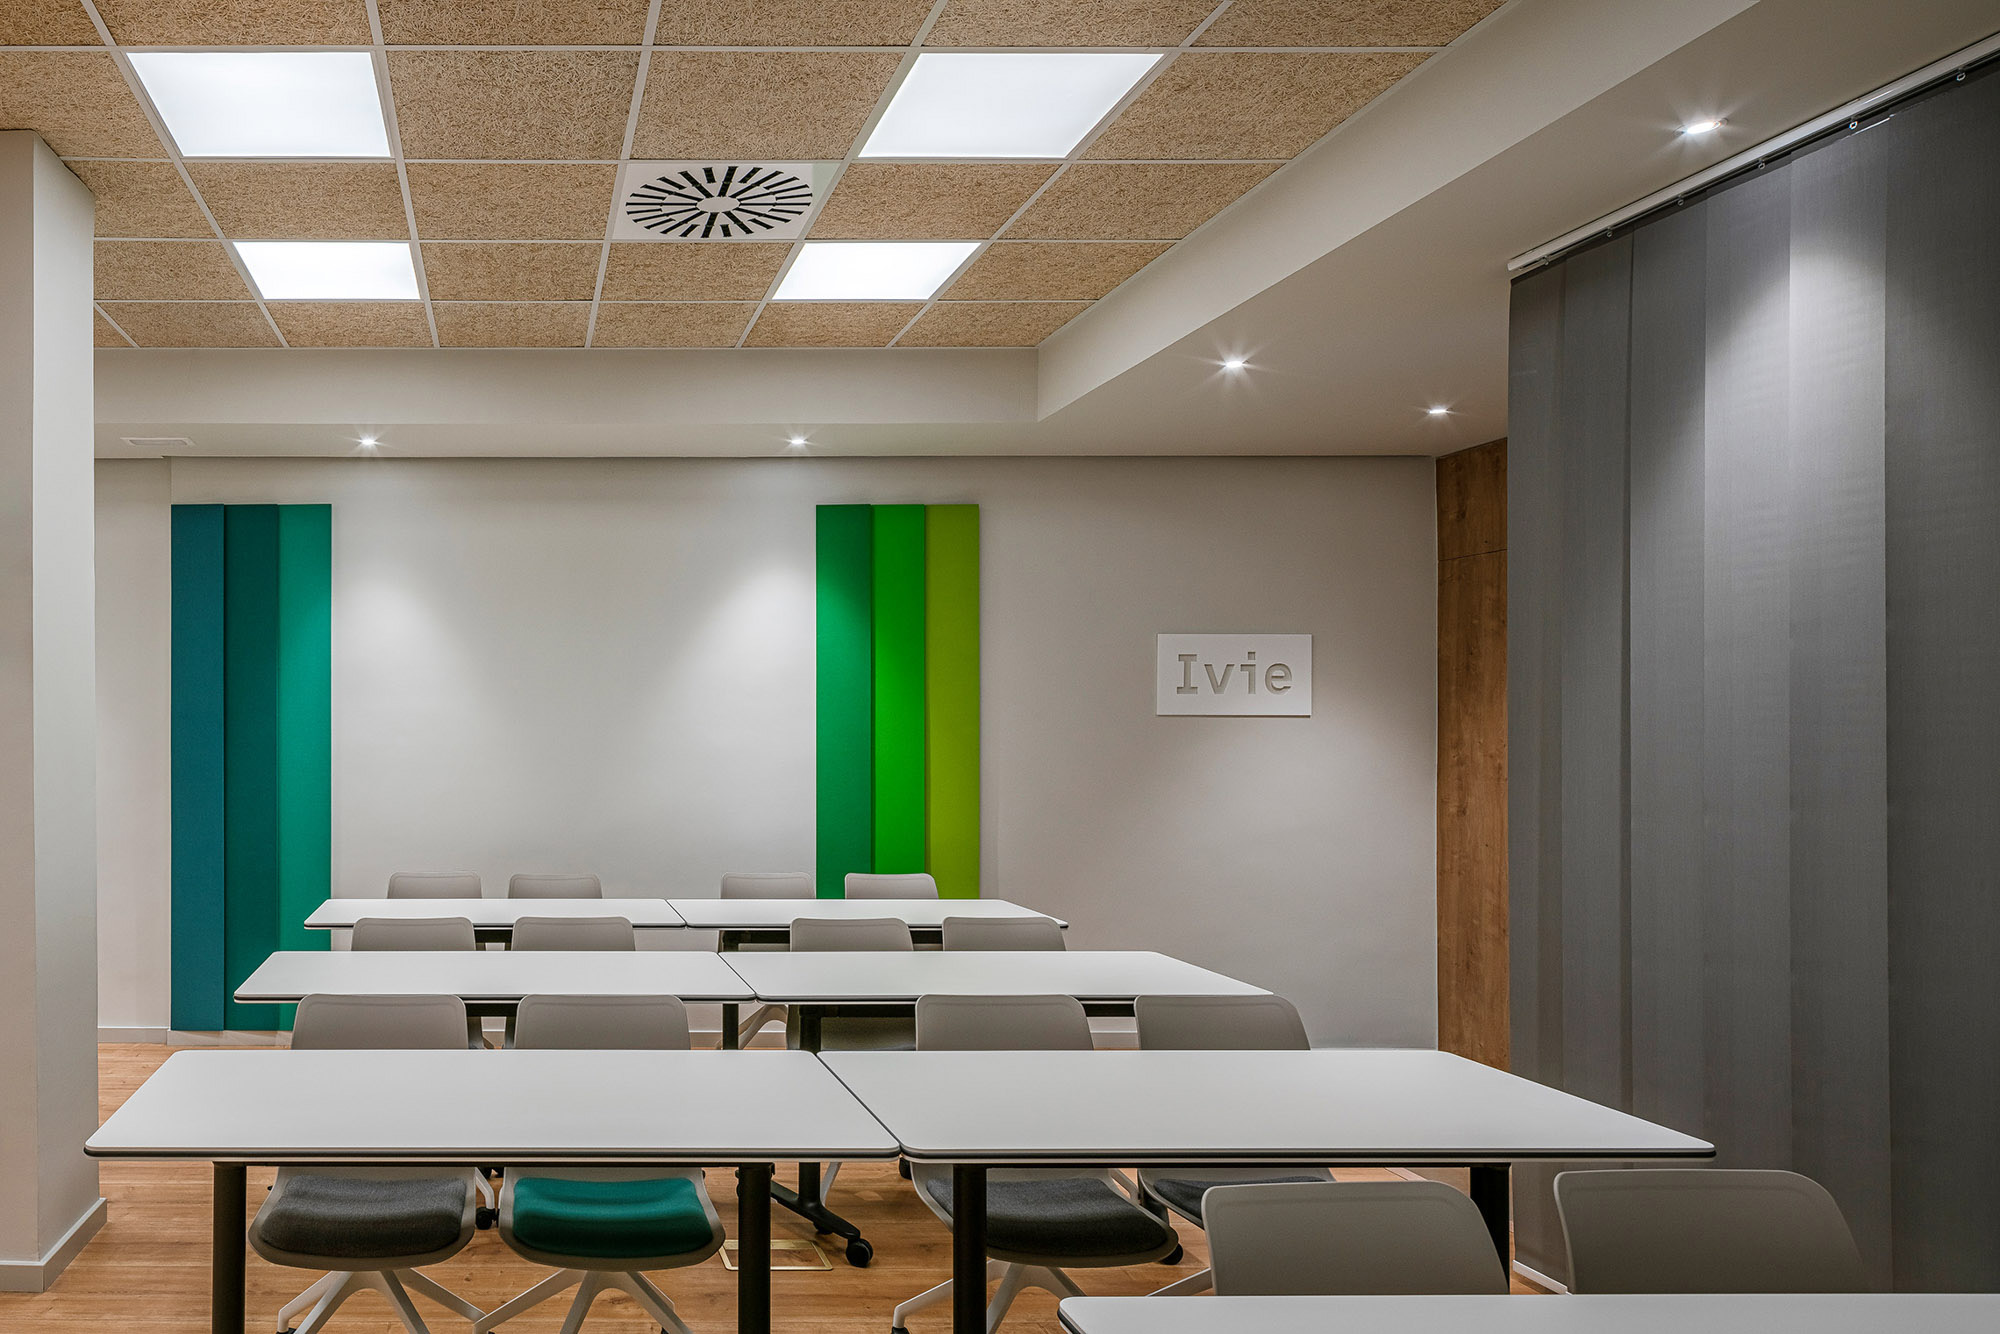 Proyecto de interiorismo para la sala polivalente del Ivie, Instituto Valenciano de Investigaciones Económicas.